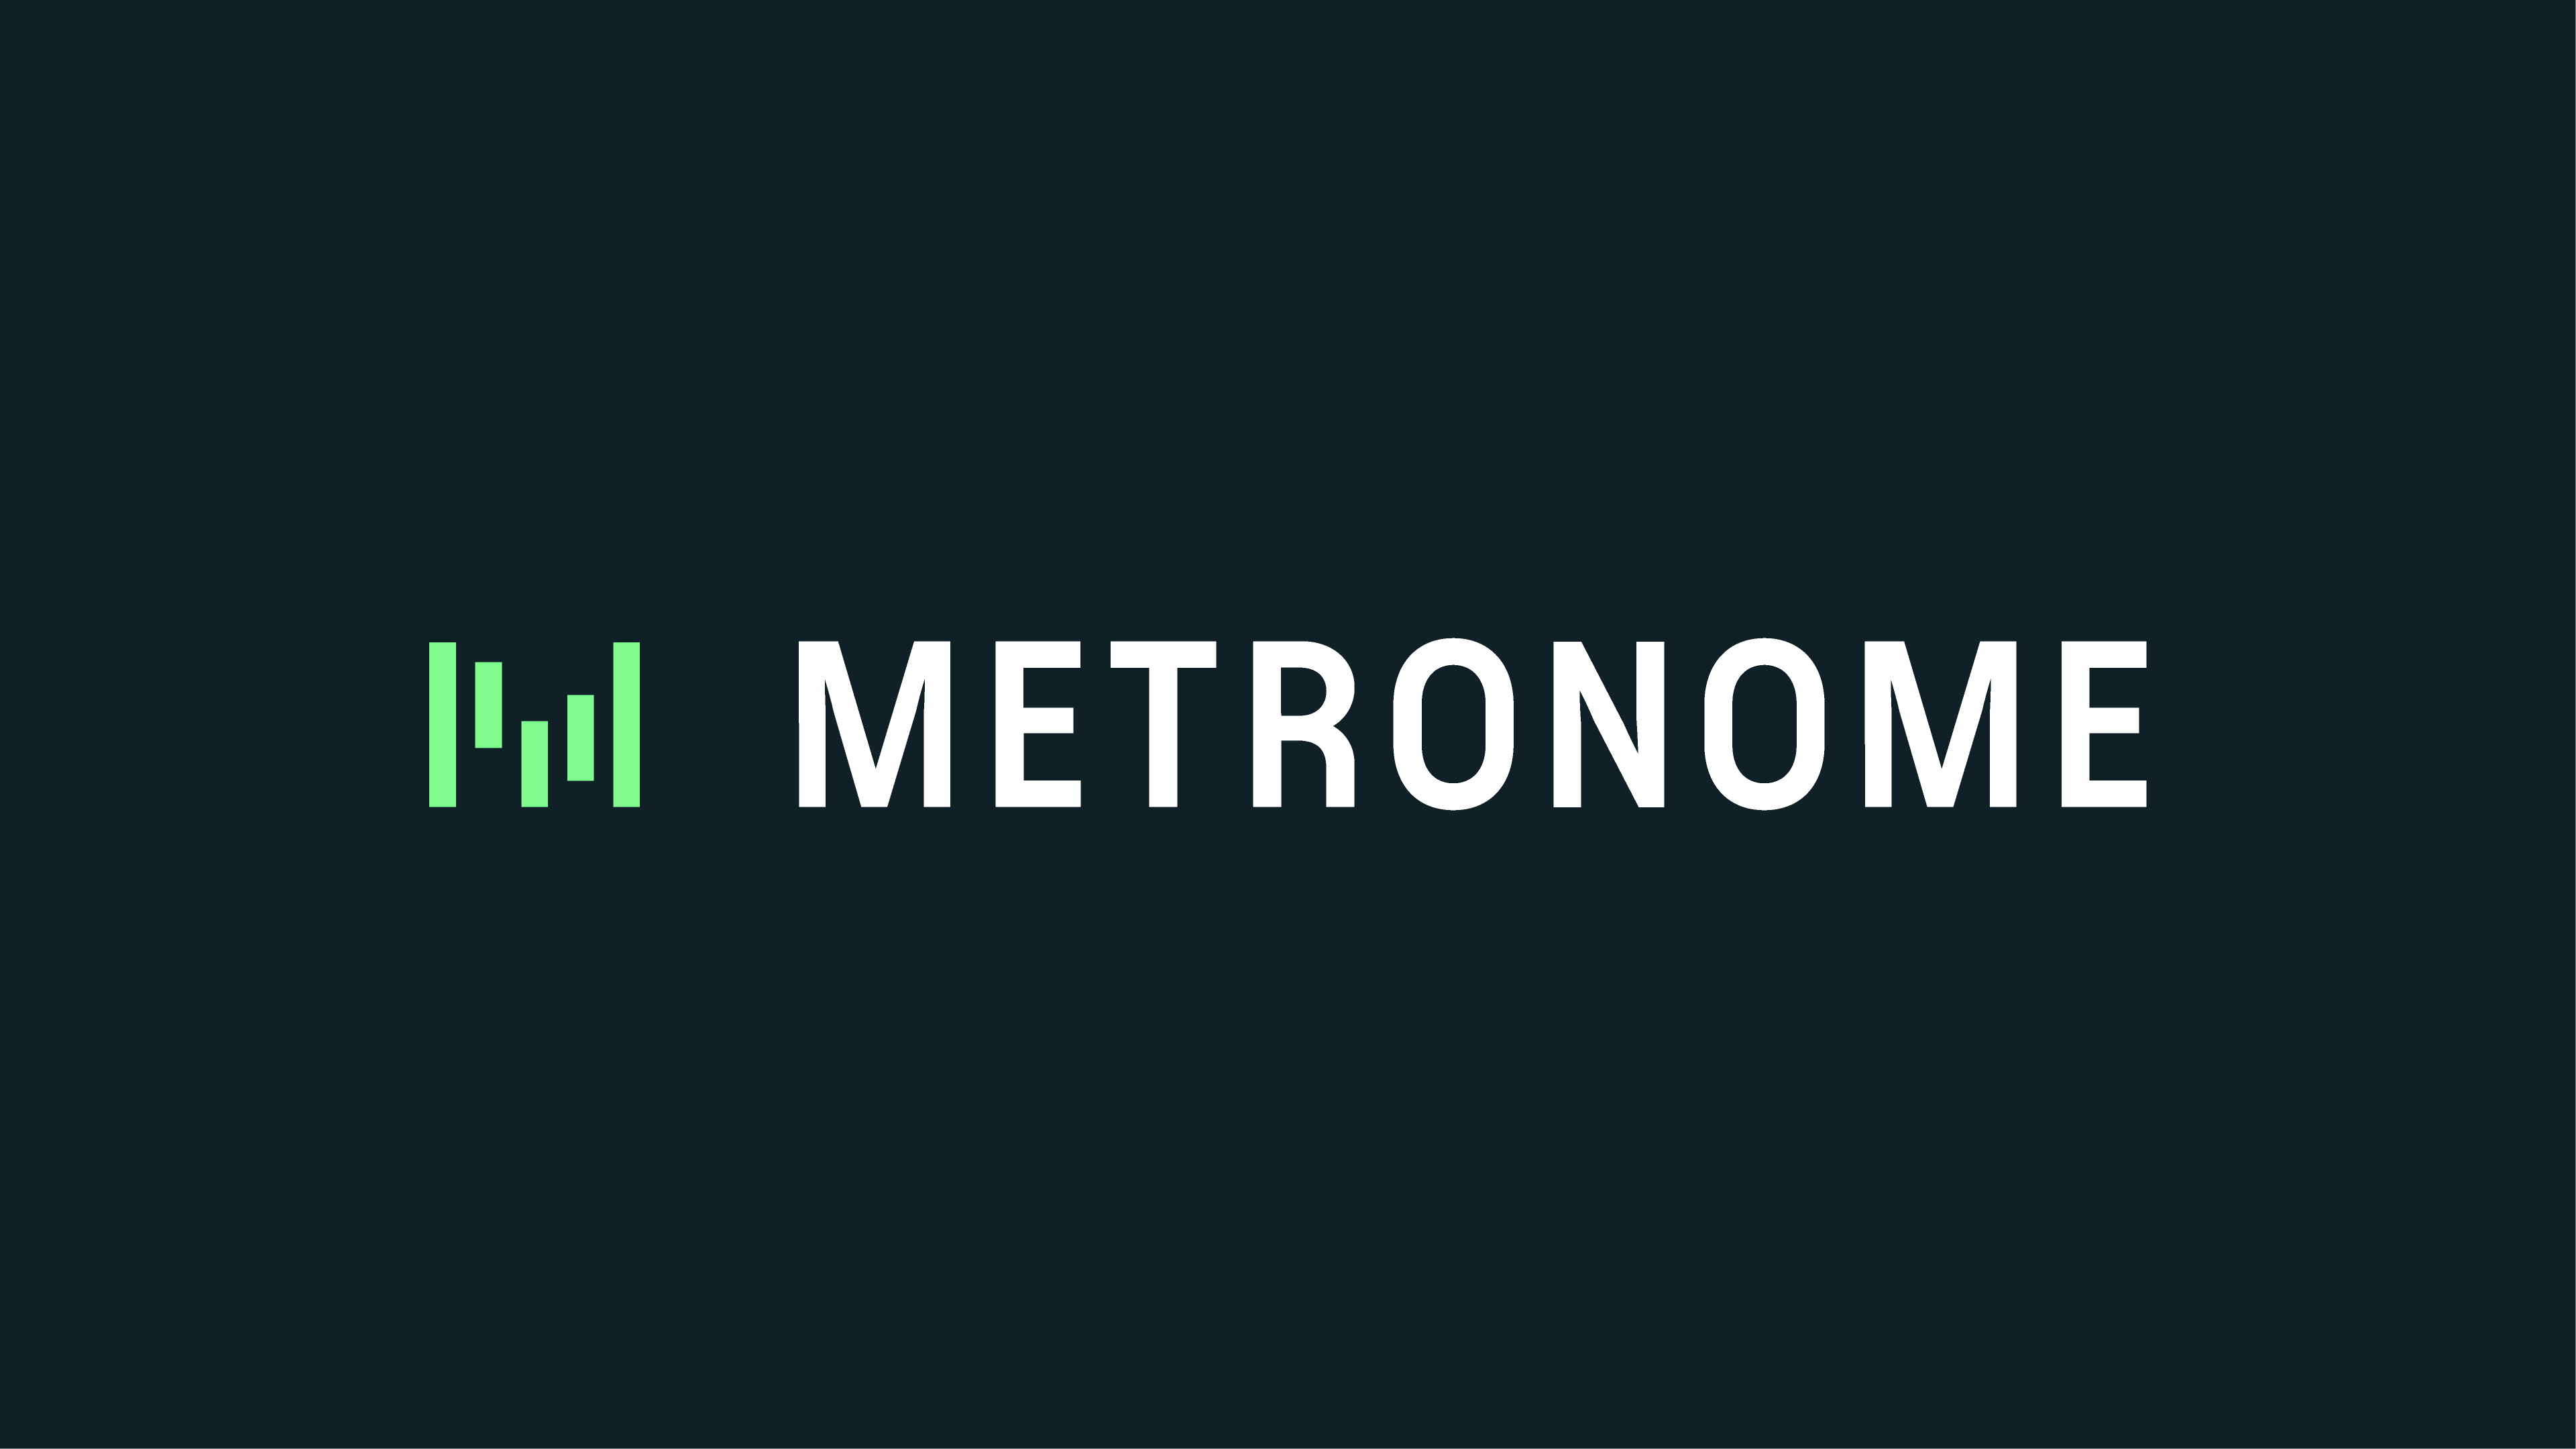 MetronomeがAIを活用した課金ソフトを開発、4,300万ドルの増資を実施